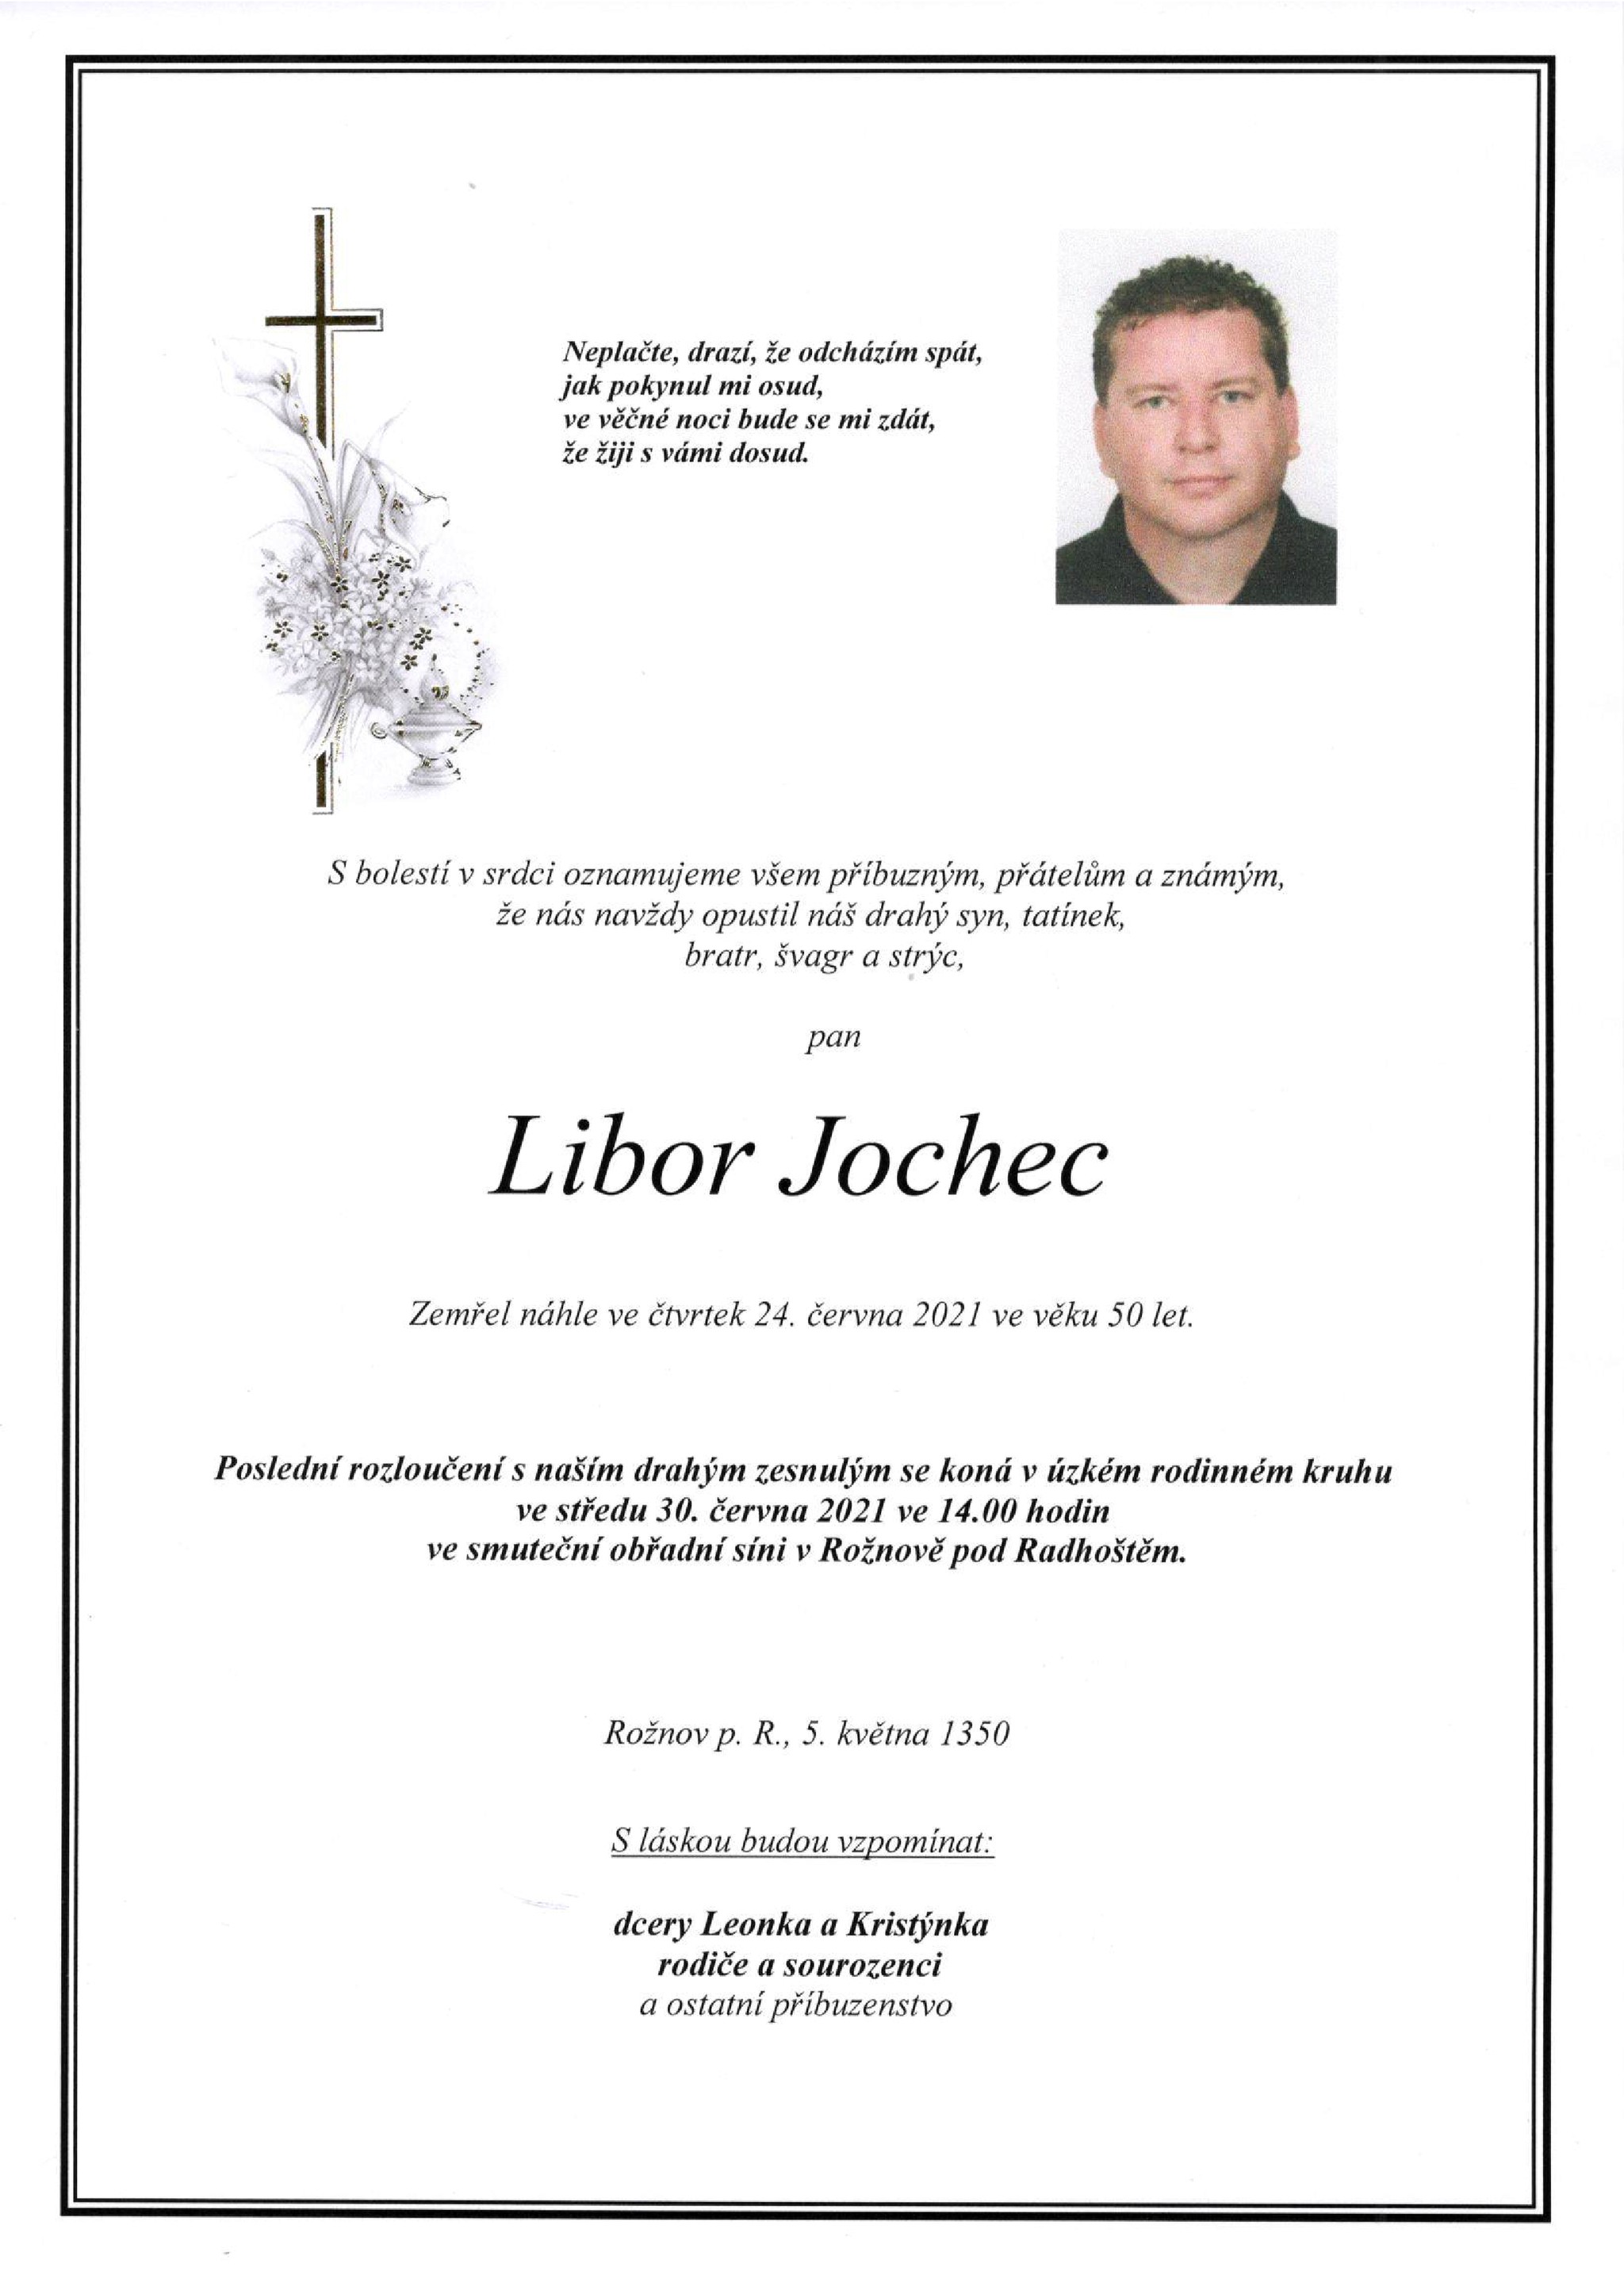 Libor Jochec